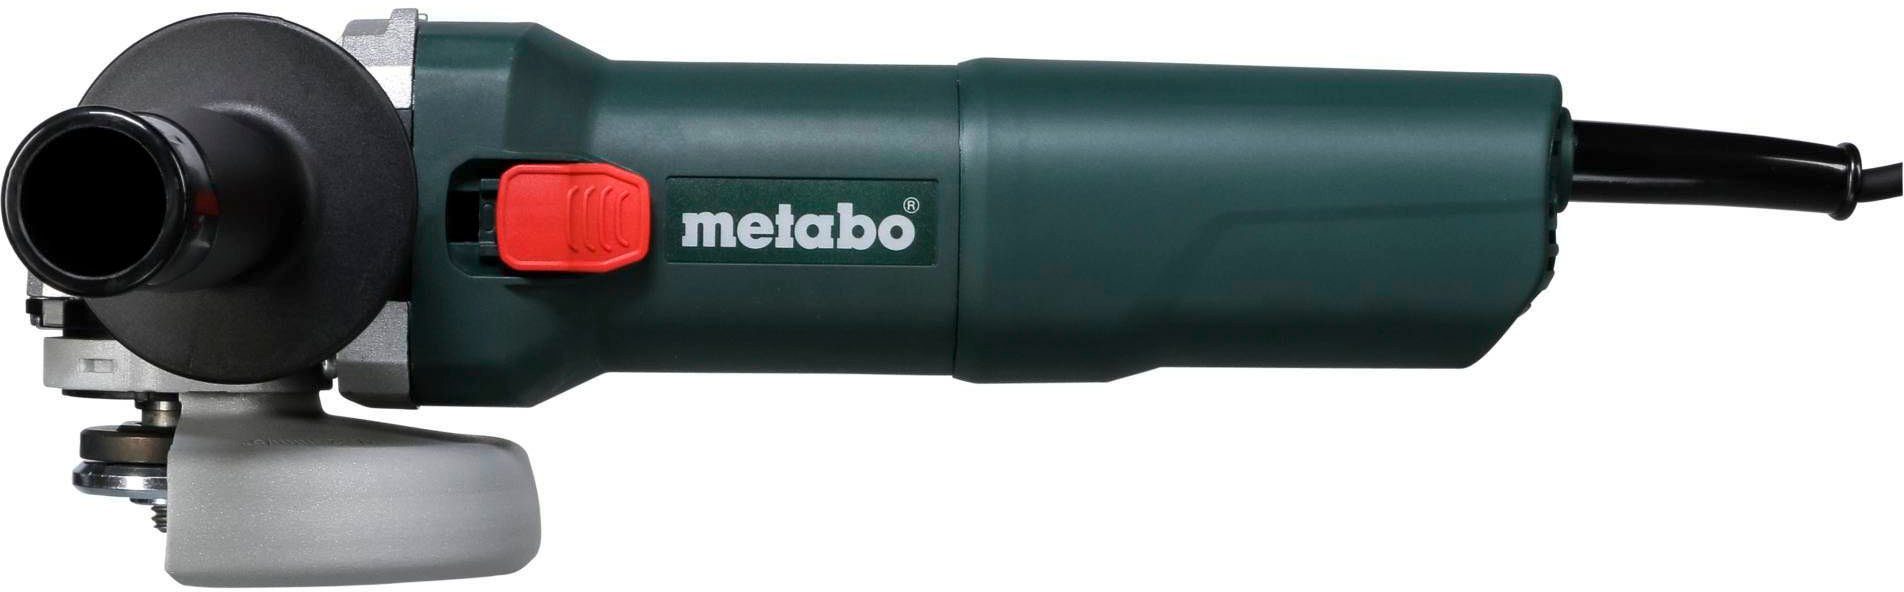 1100-125 Winkelschleifer metabo W